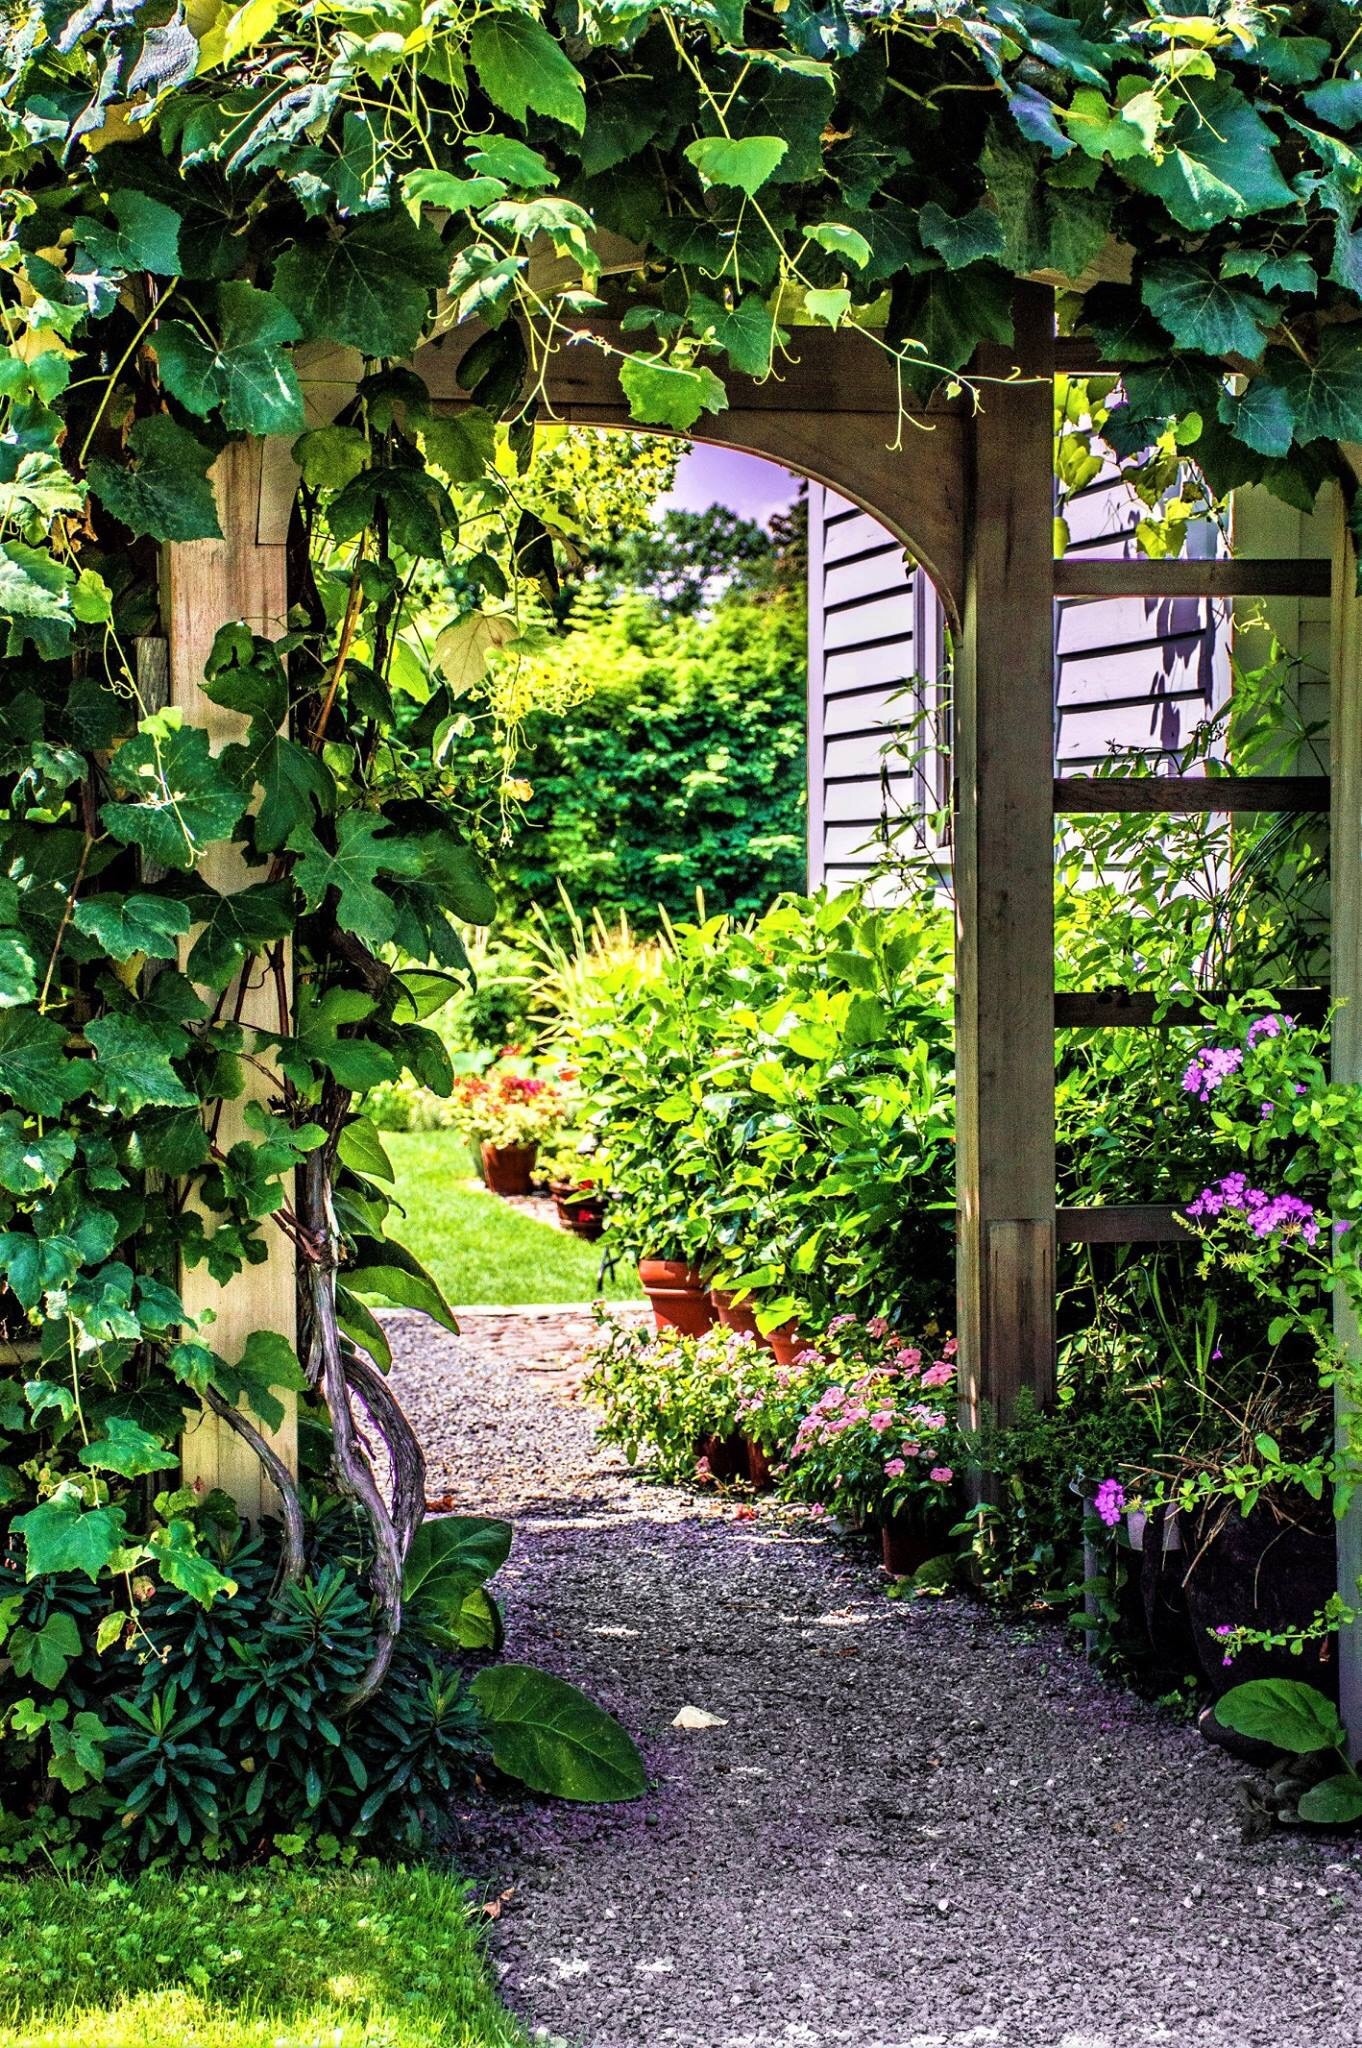 Jardins et arboretum de Blithewold Mansion, Bristol, Rhode Island, États-Unis d’Amérique